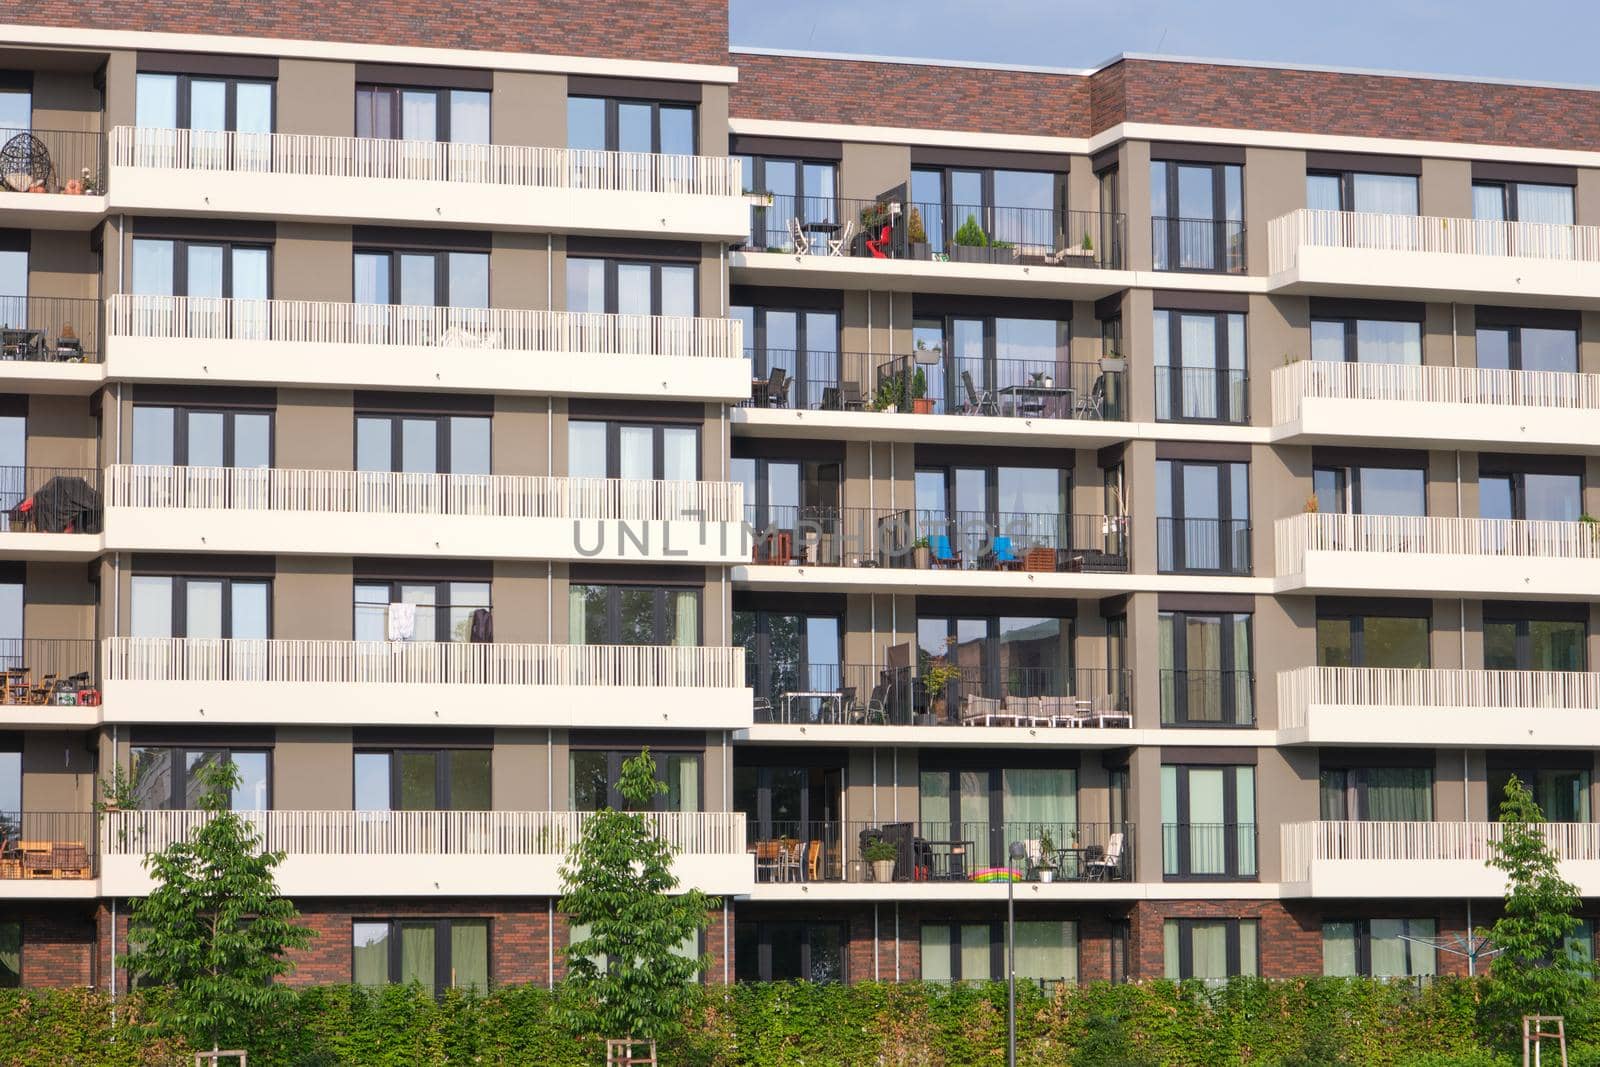 Facade of a modern apartment building by elxeneize